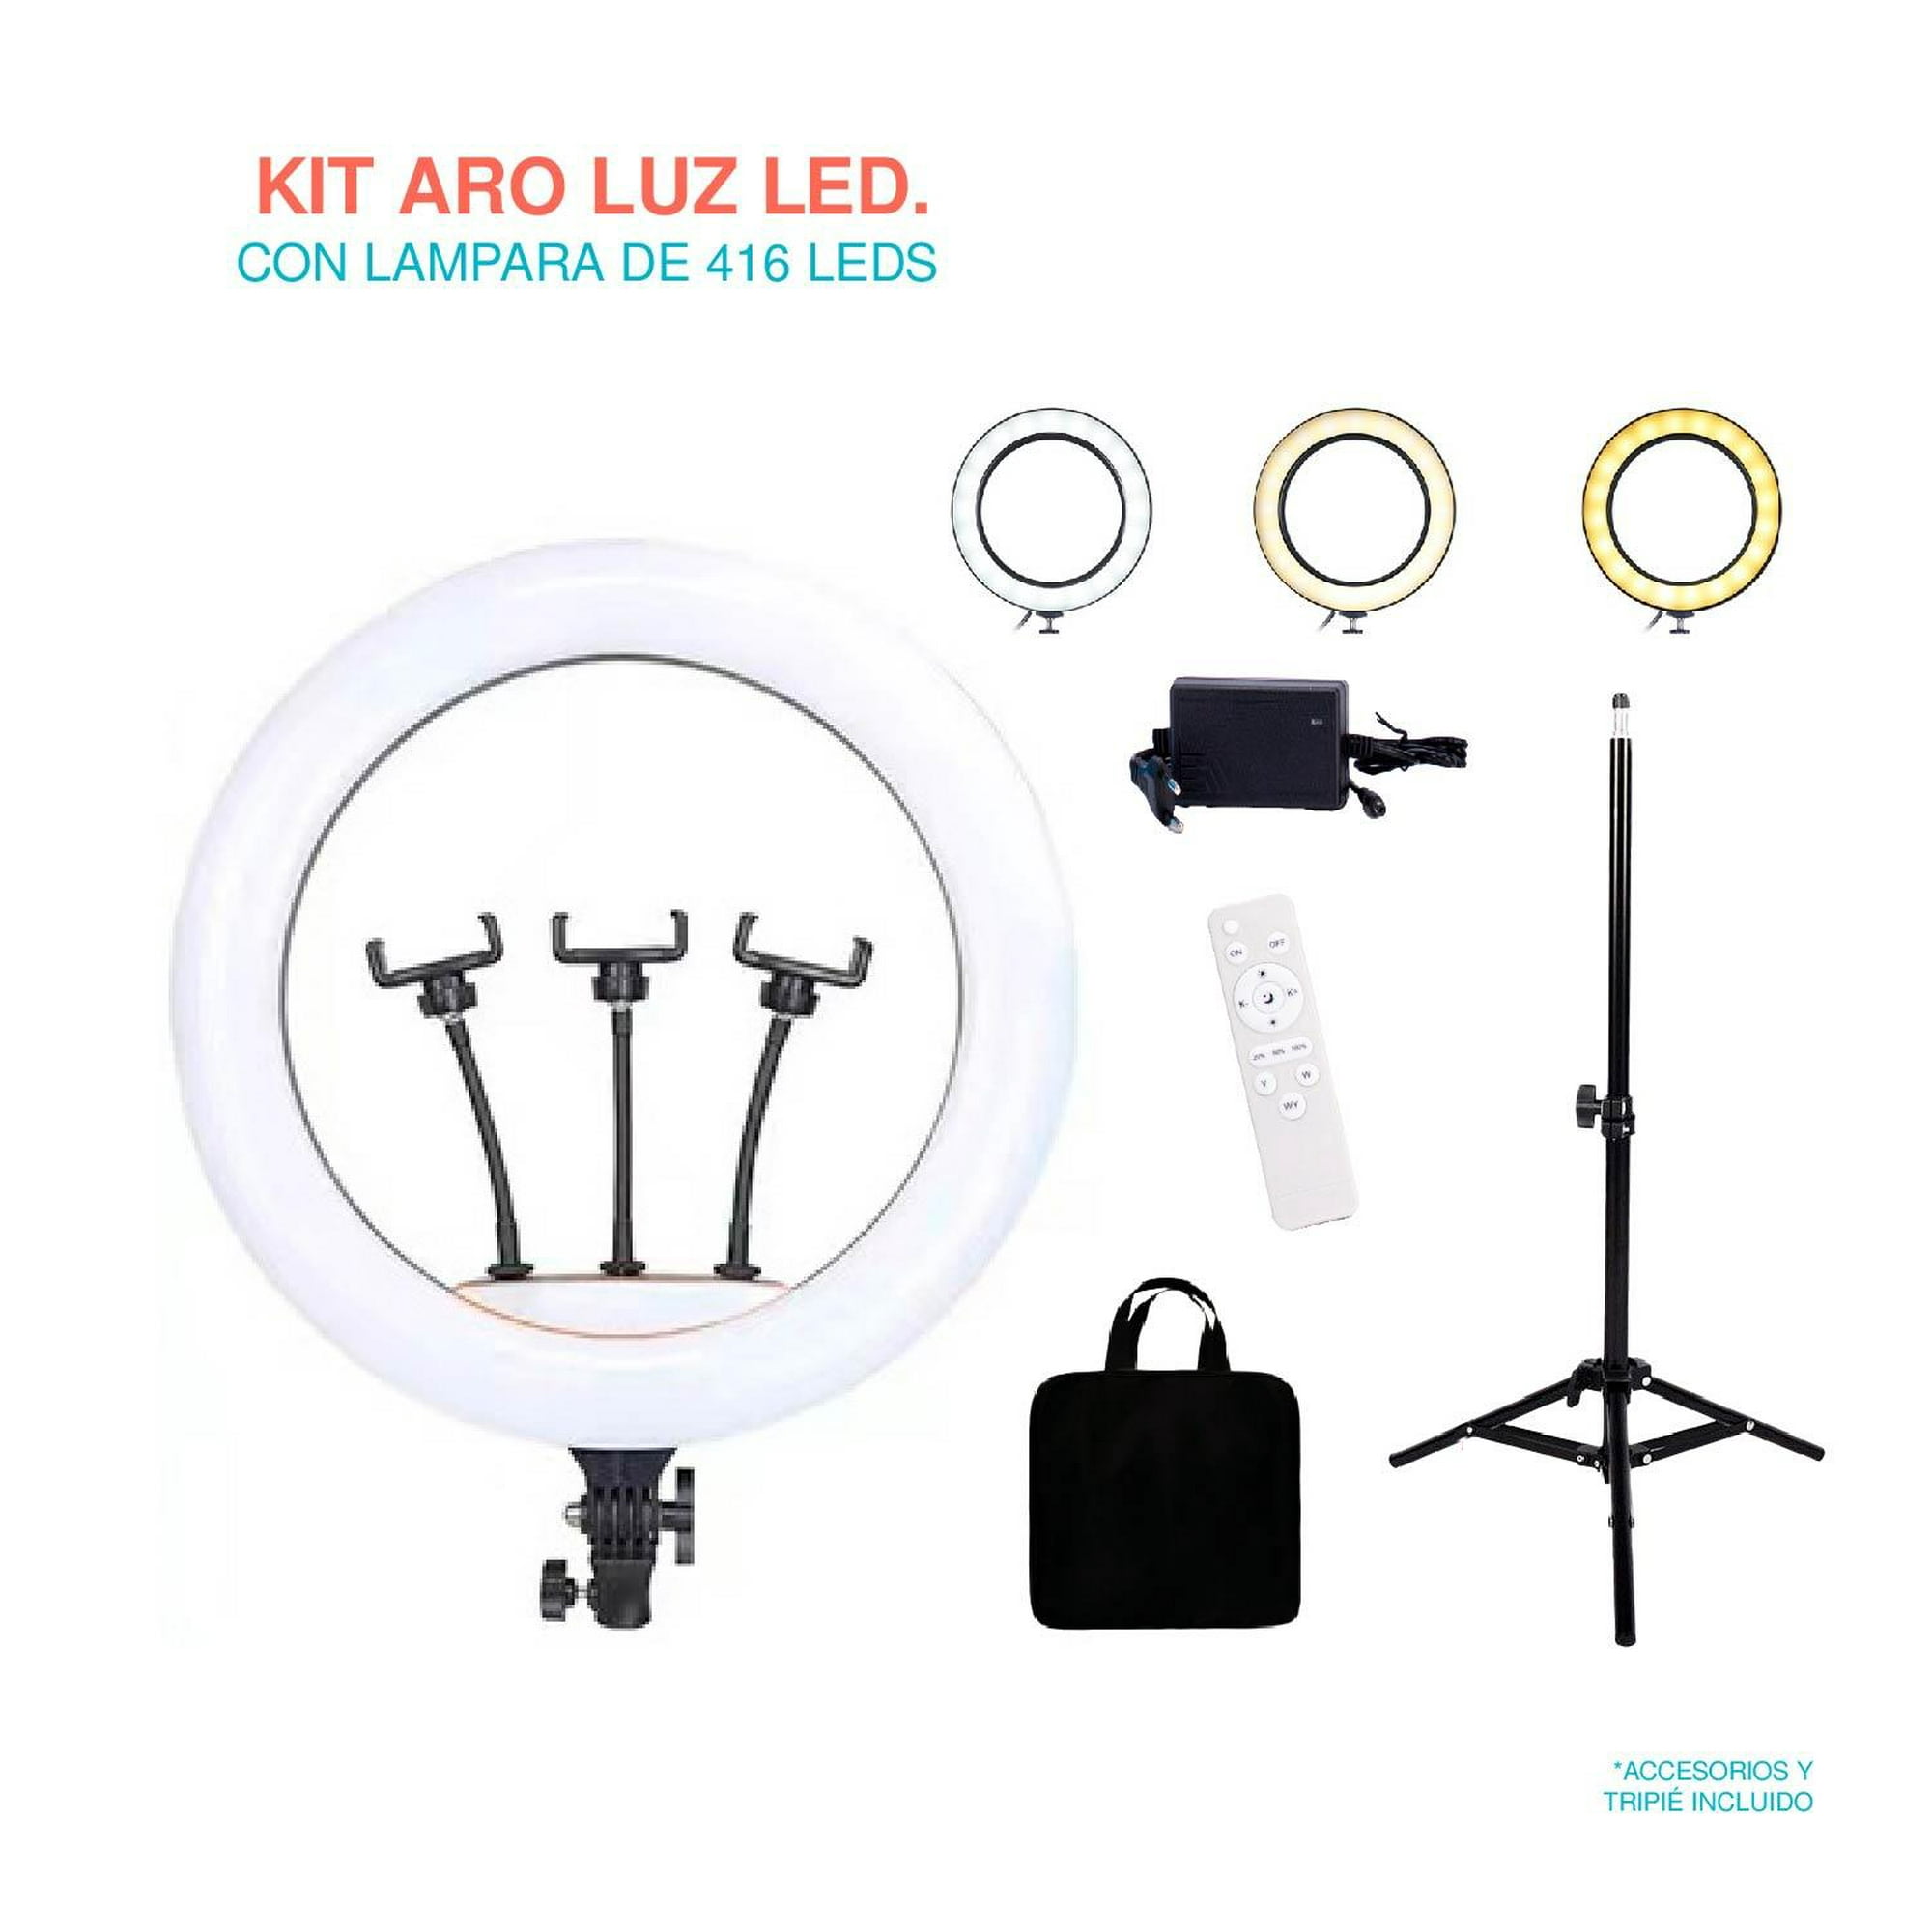 Aro De Luz Led Profesional 45cm Gadgets And Fun RGB iluminacion blanca y de  colores 18 pulgadas